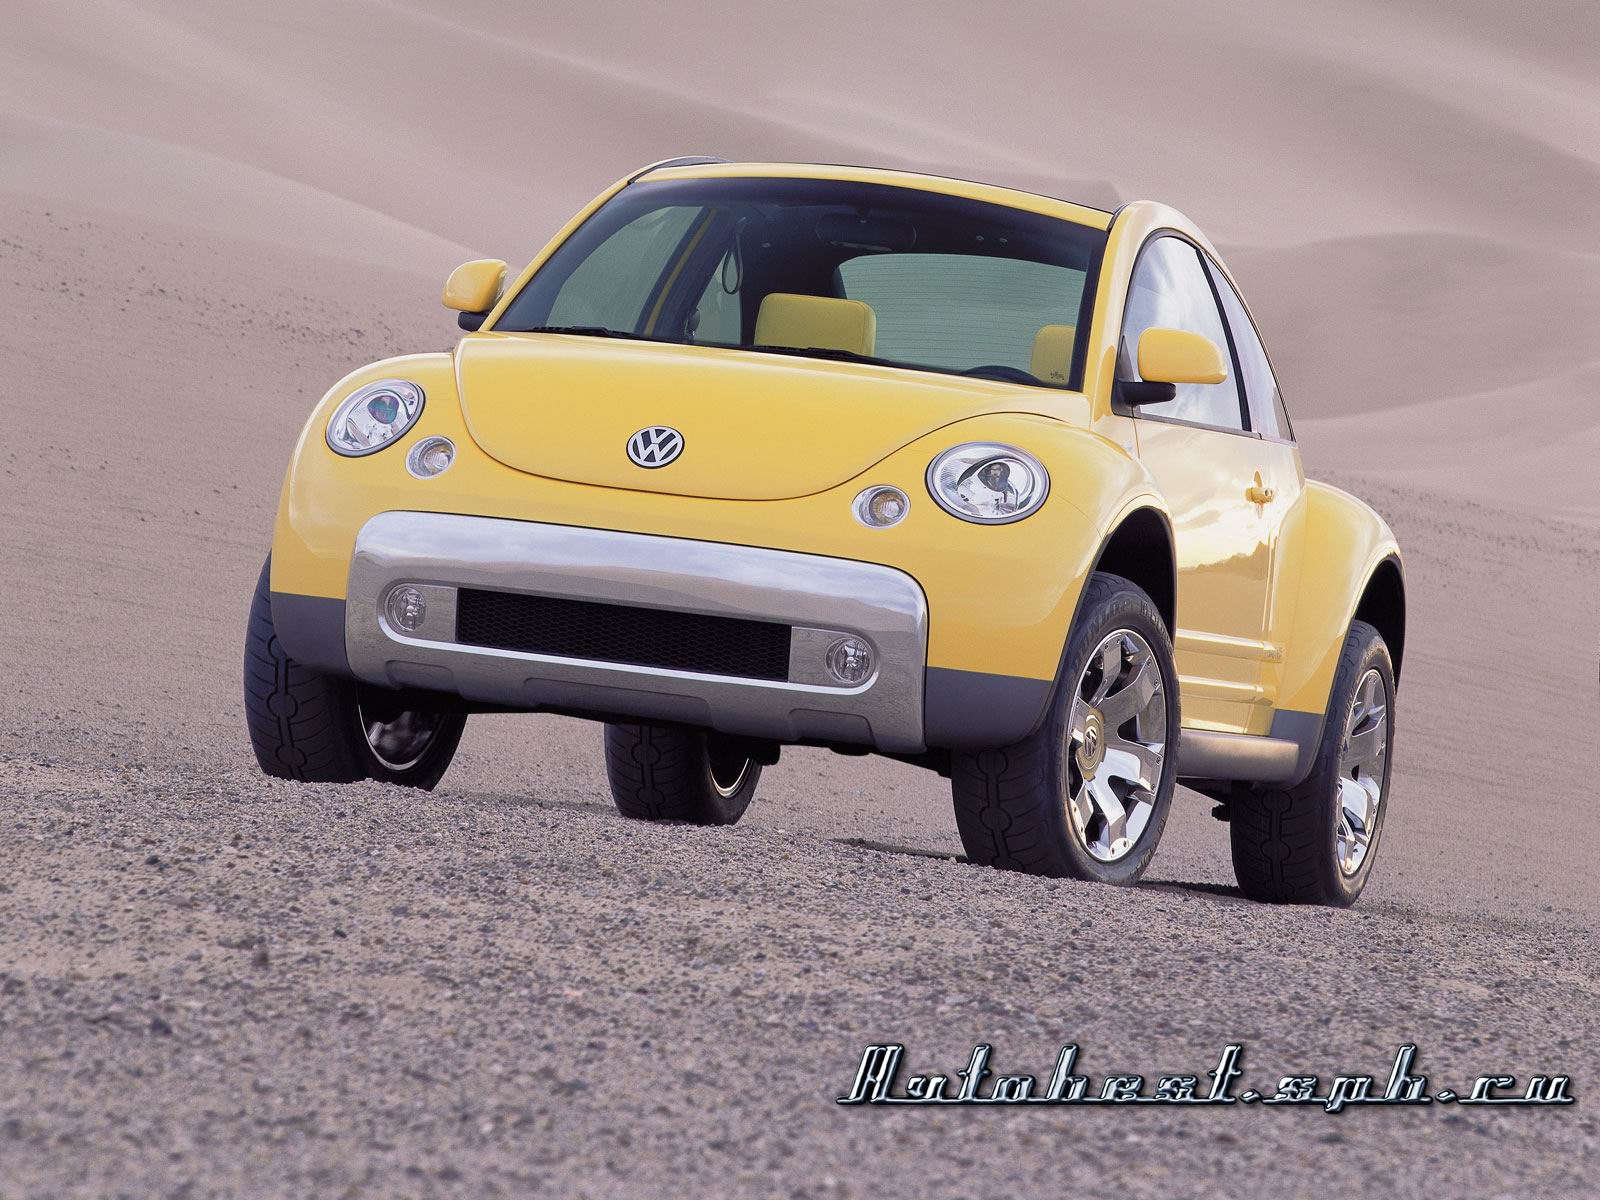 Download HQ Volkswagen wallpaper / Cars / 1600x1200